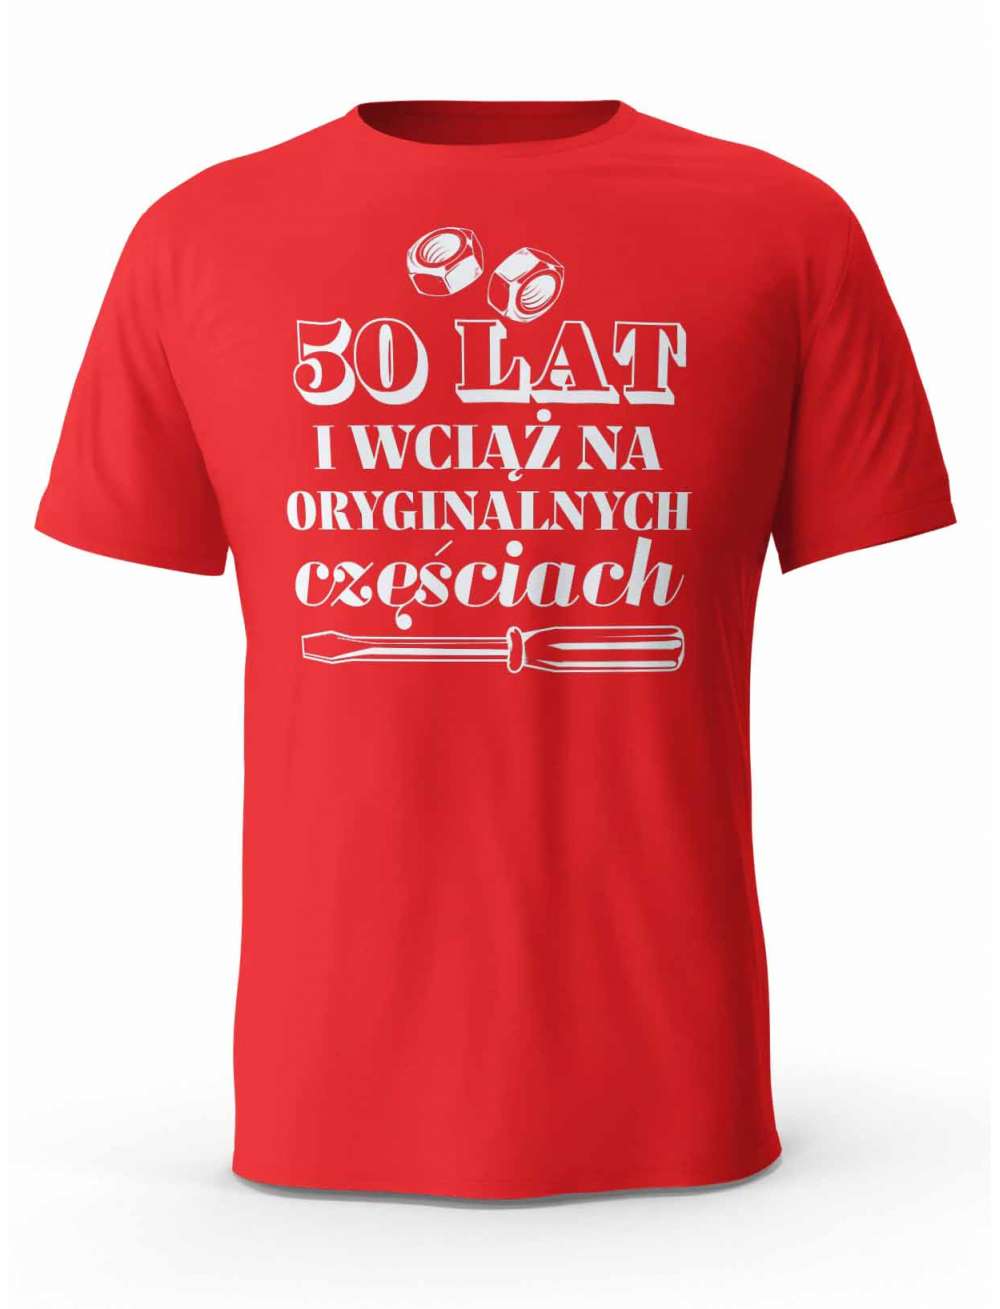 Koszulka na 50 urodziny, T-shirt Dla Mężczyzny